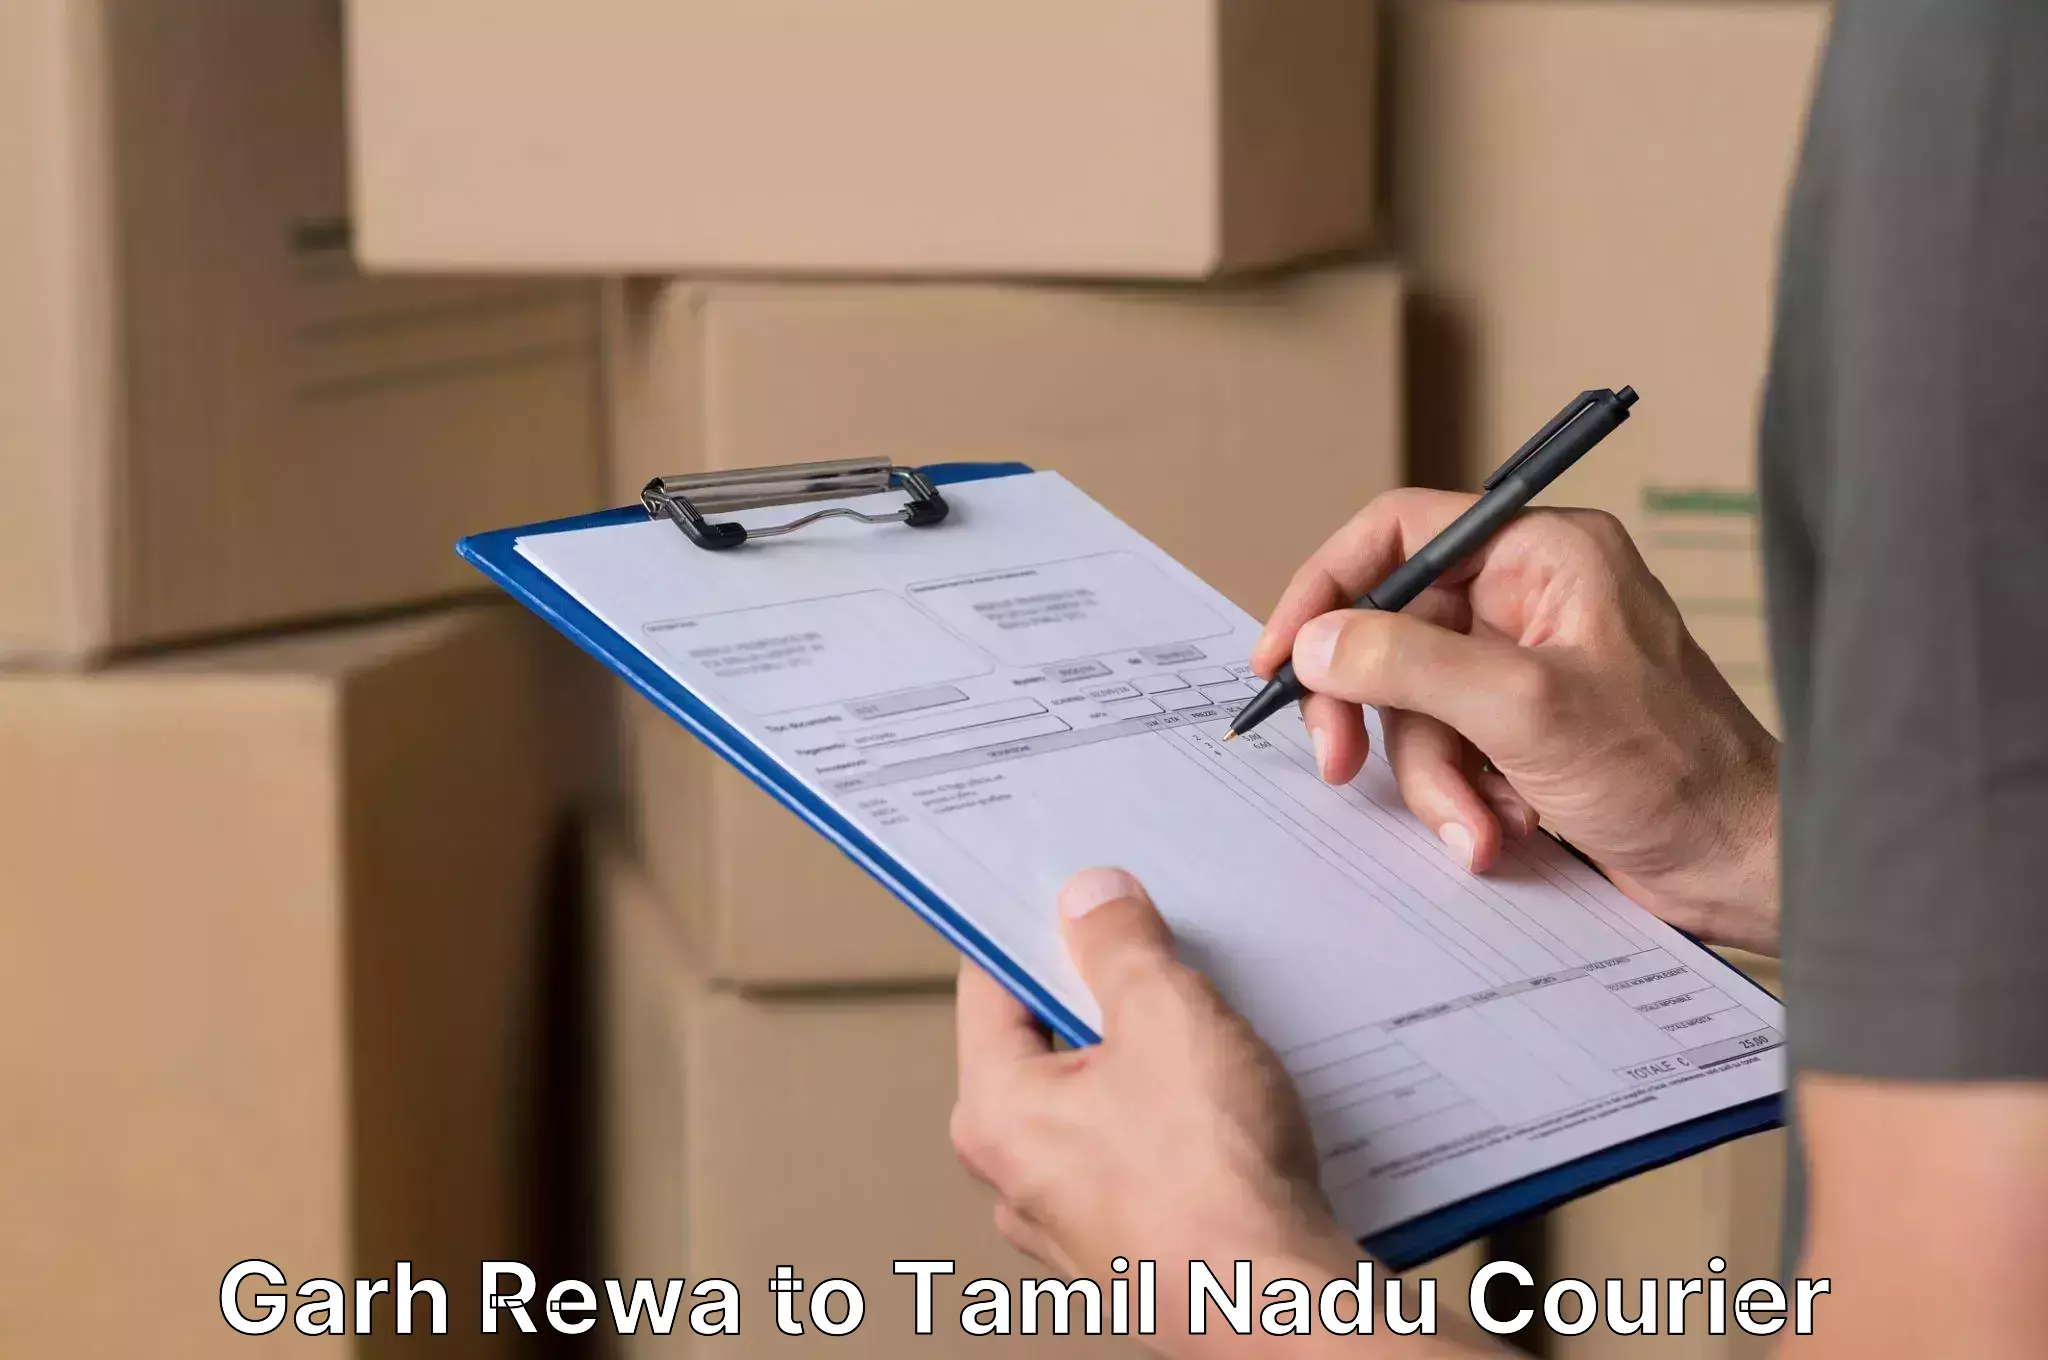 Efficient relocation services Garh Rewa to Ramanathapuram